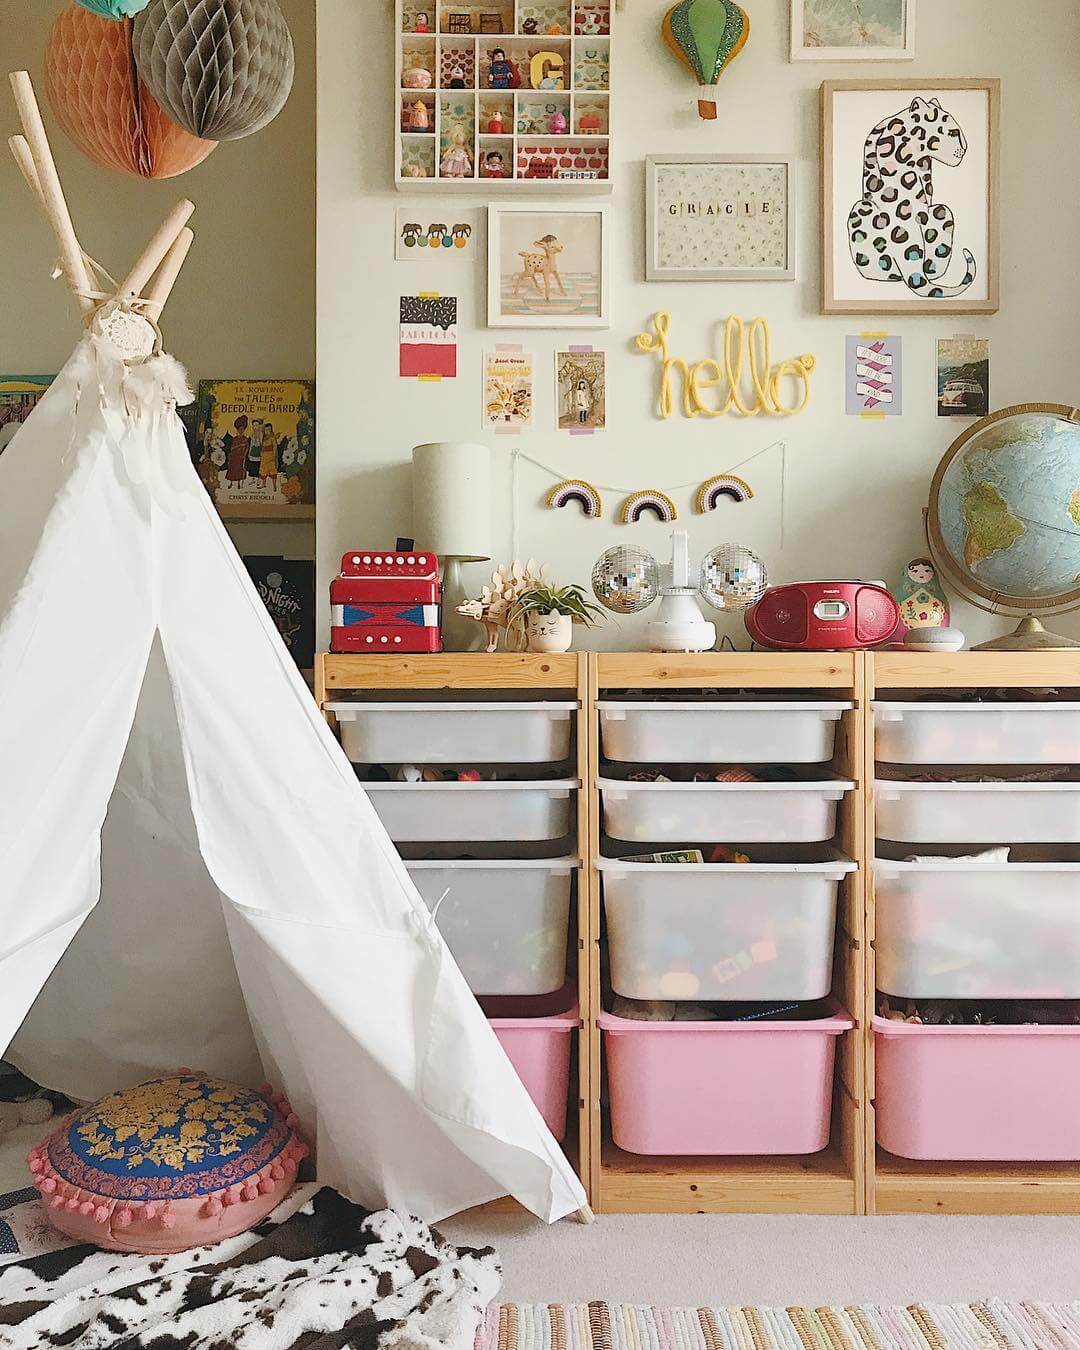 9 CREATIVE IKEA TROFAST HACKS FOR KIDS BEDROOMS